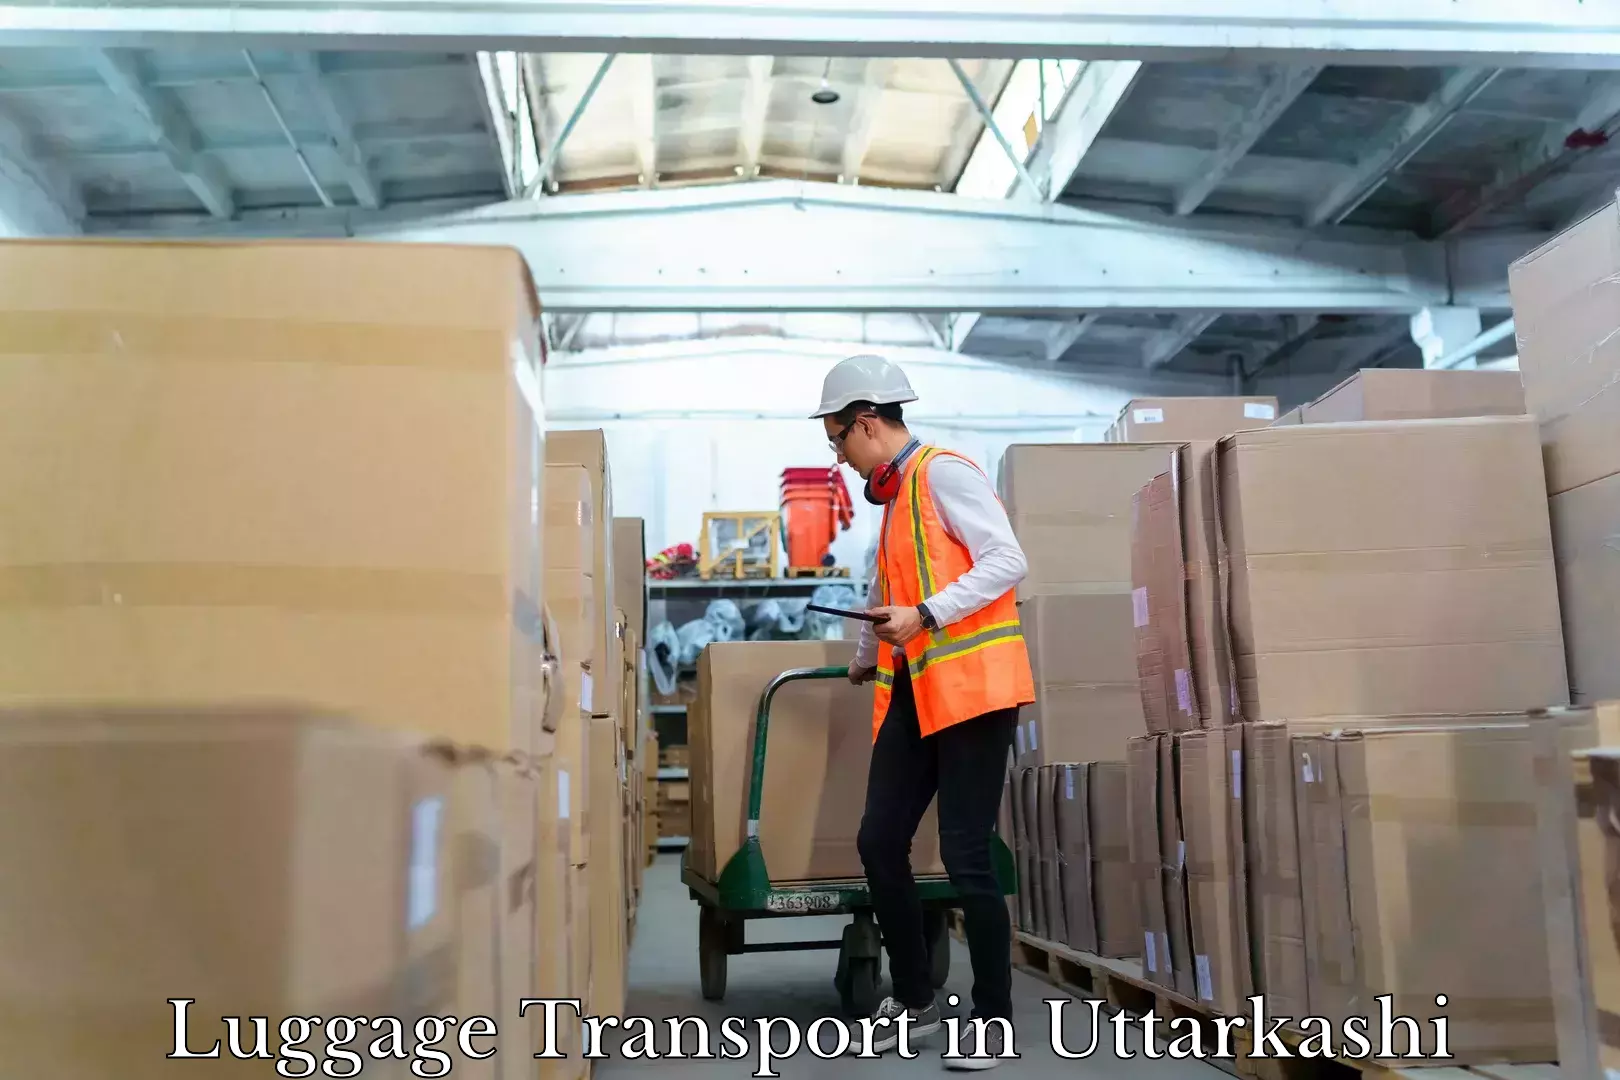 Luggage delivery optimization in Uttarkashi